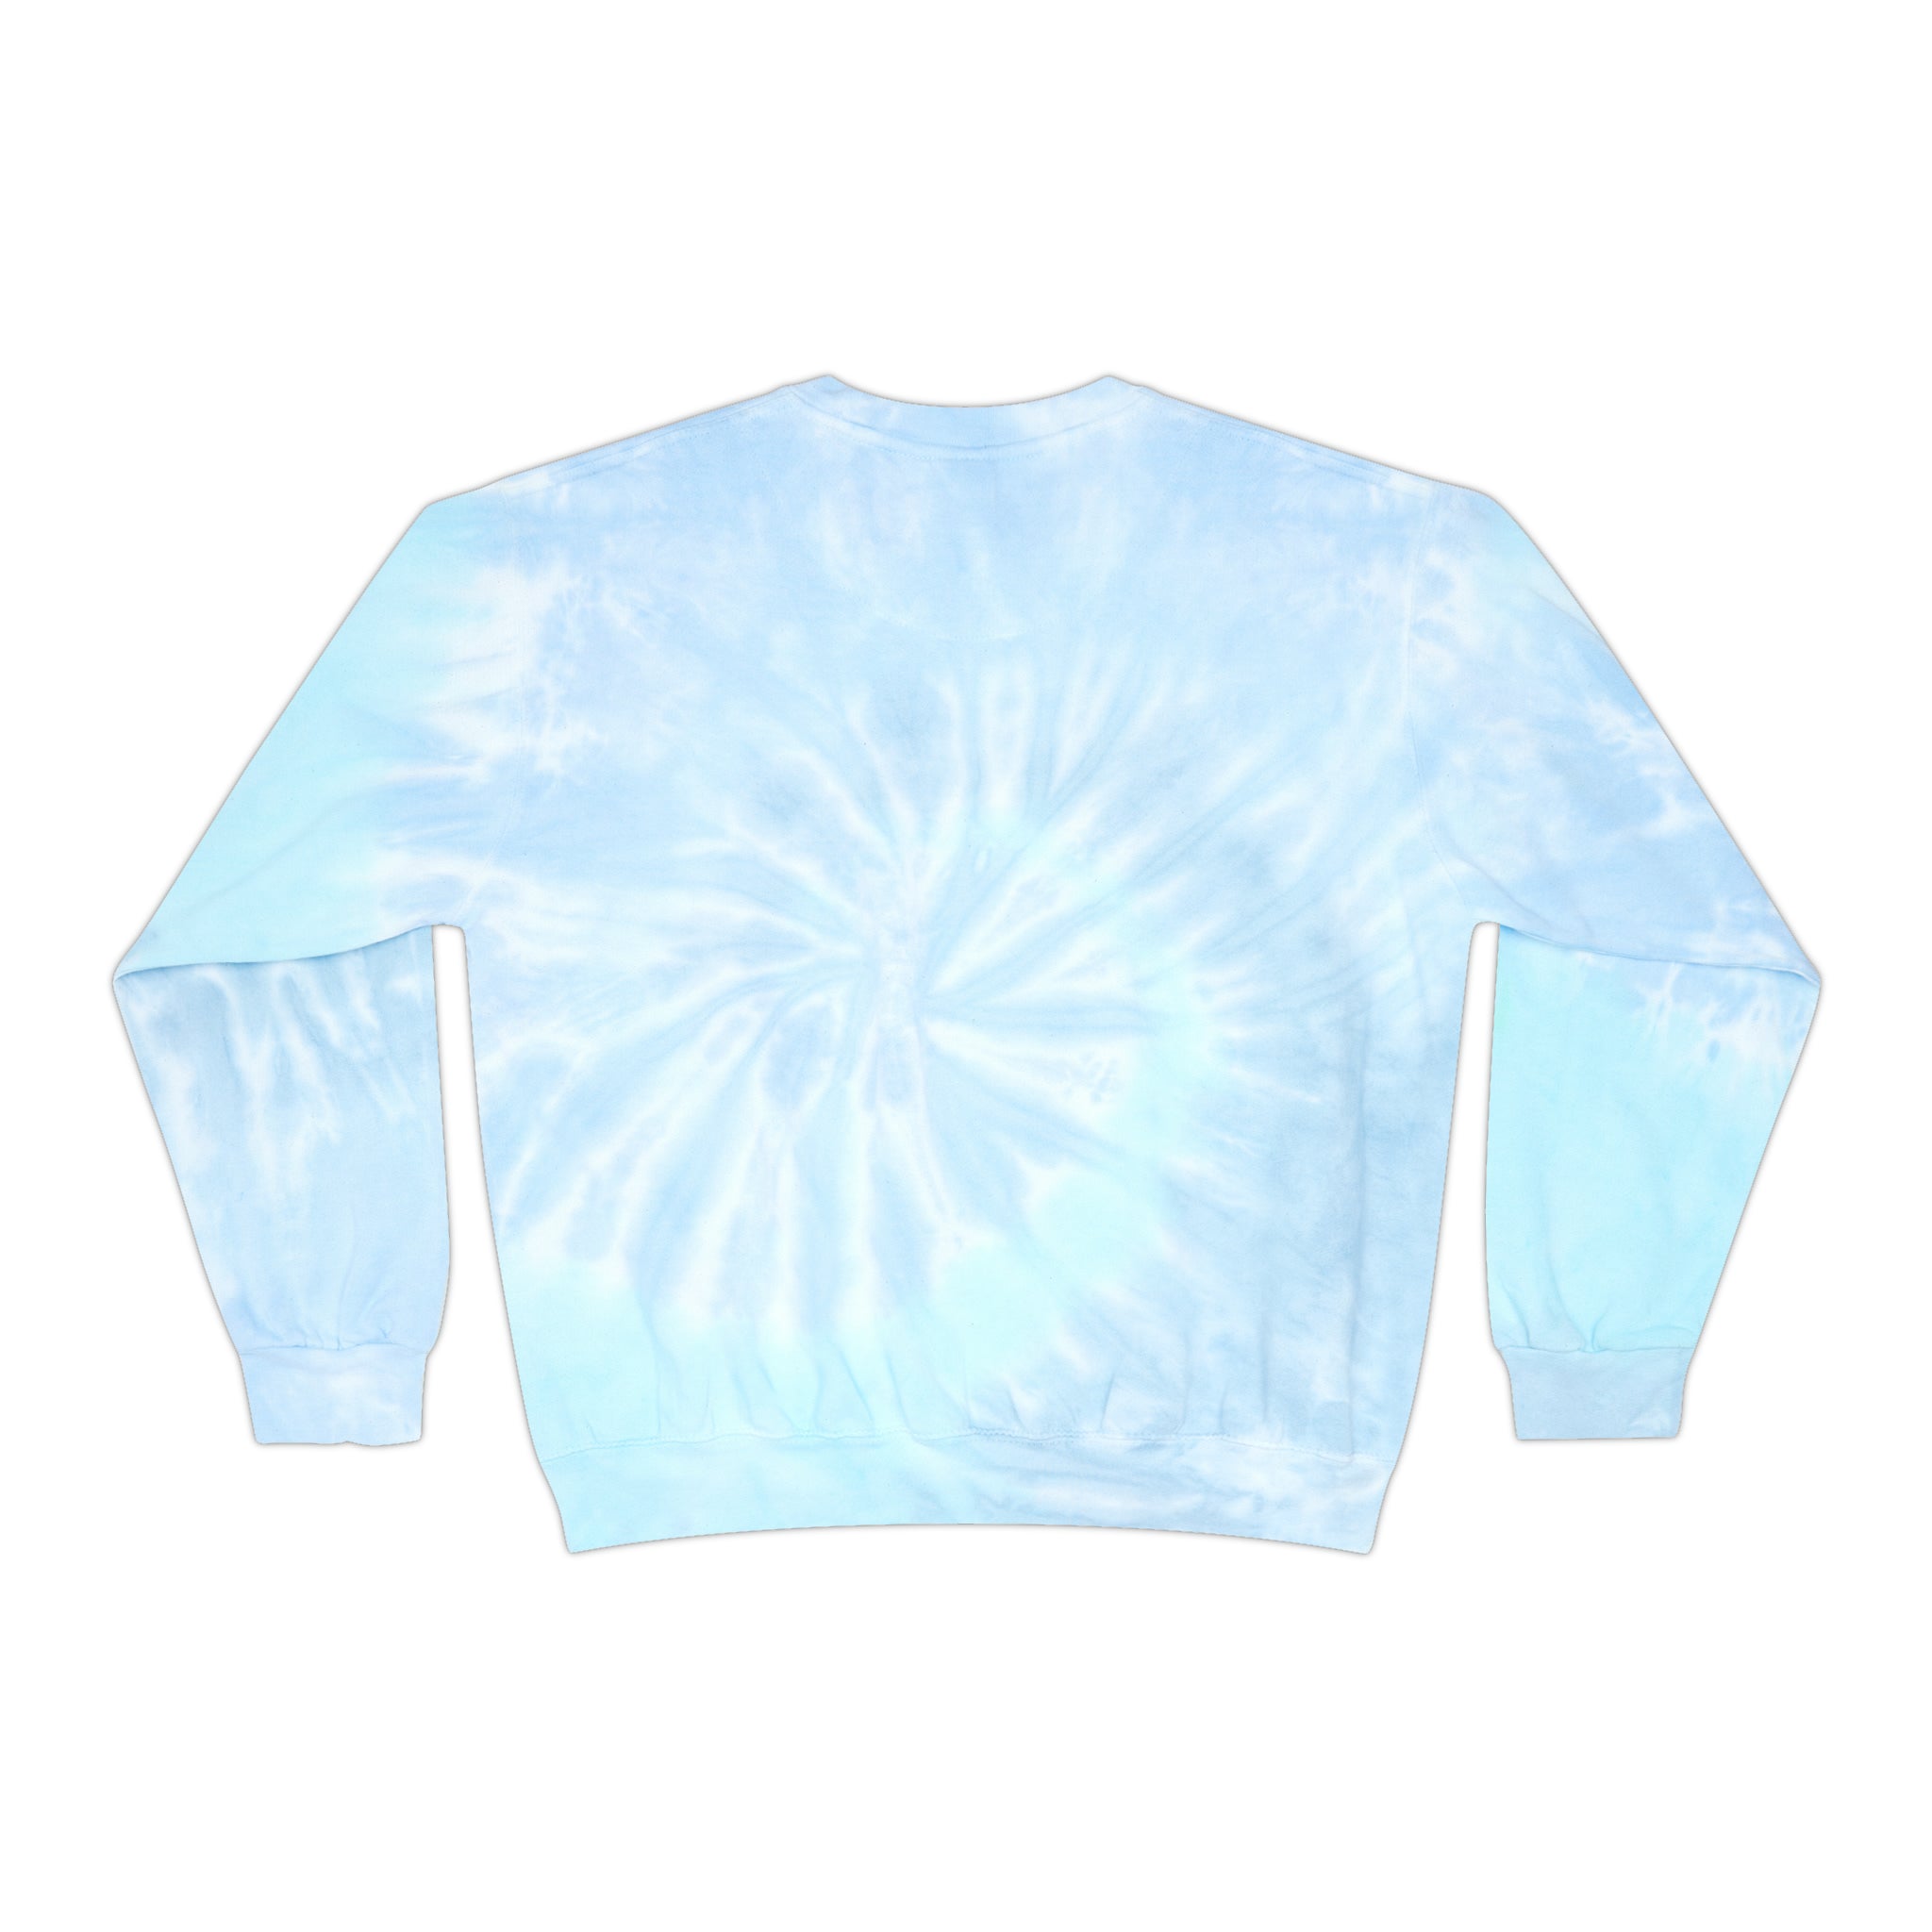 Minerallymade | Unisex Tie-Dye Sweatshirt